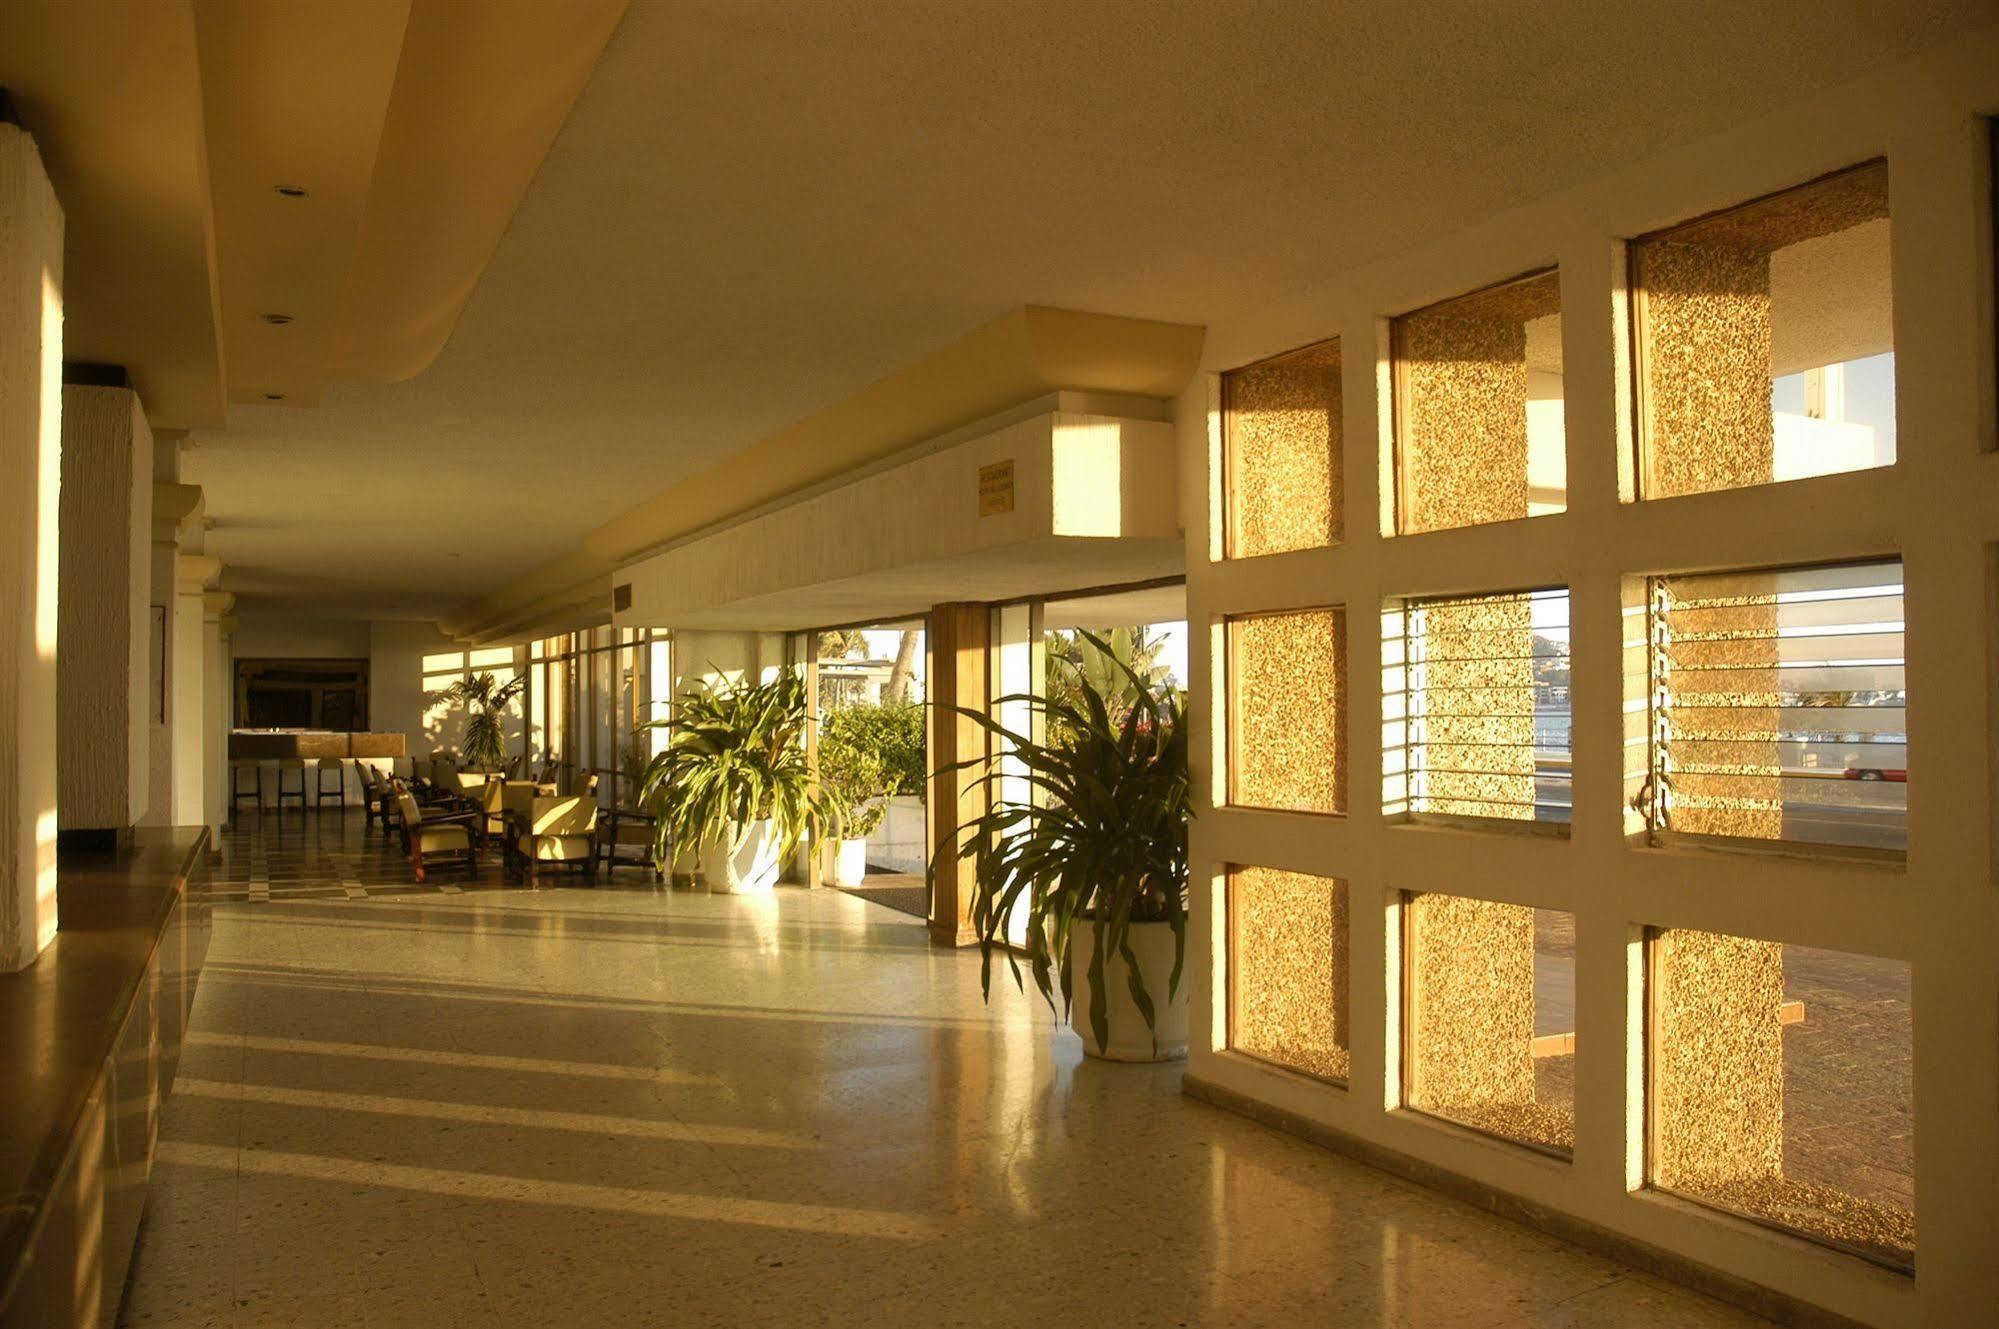 Hotel De Cima Mazatlán Exterior foto